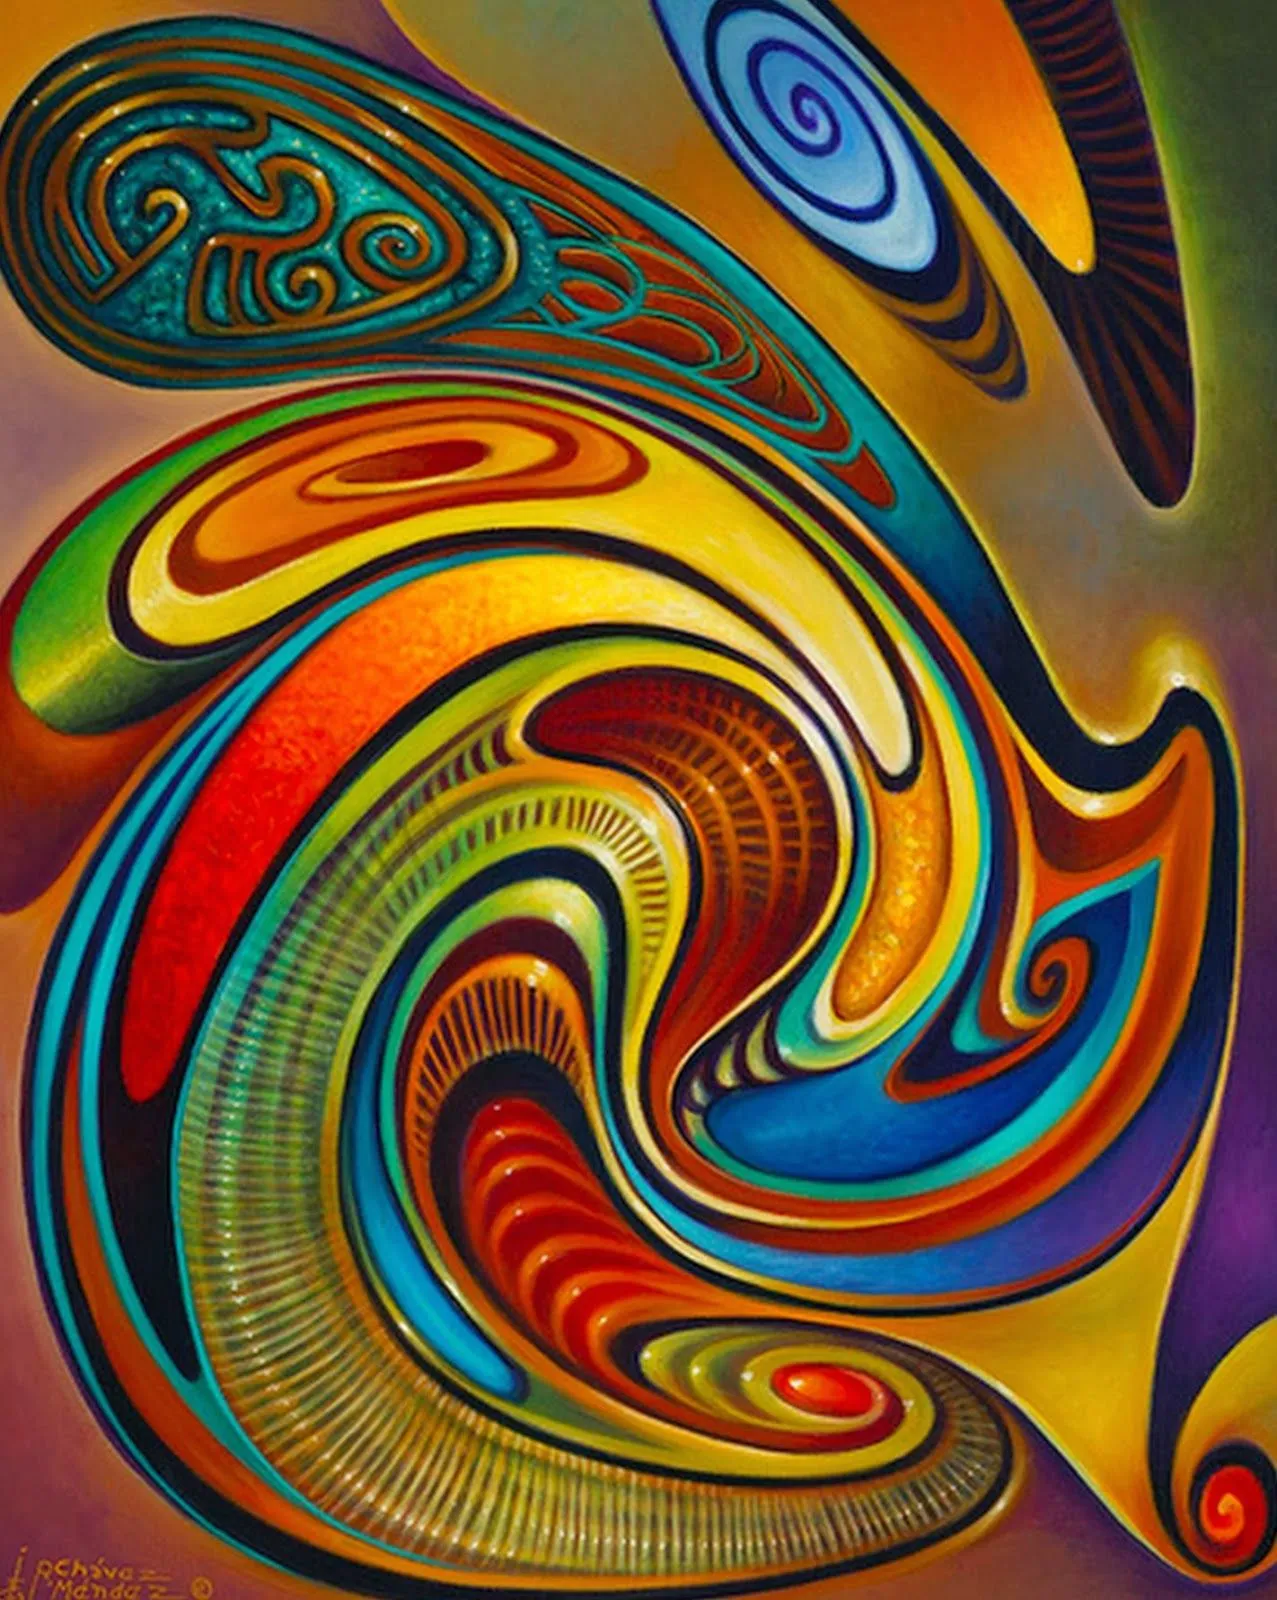 Cuadros abstractos coloridos - Imagui